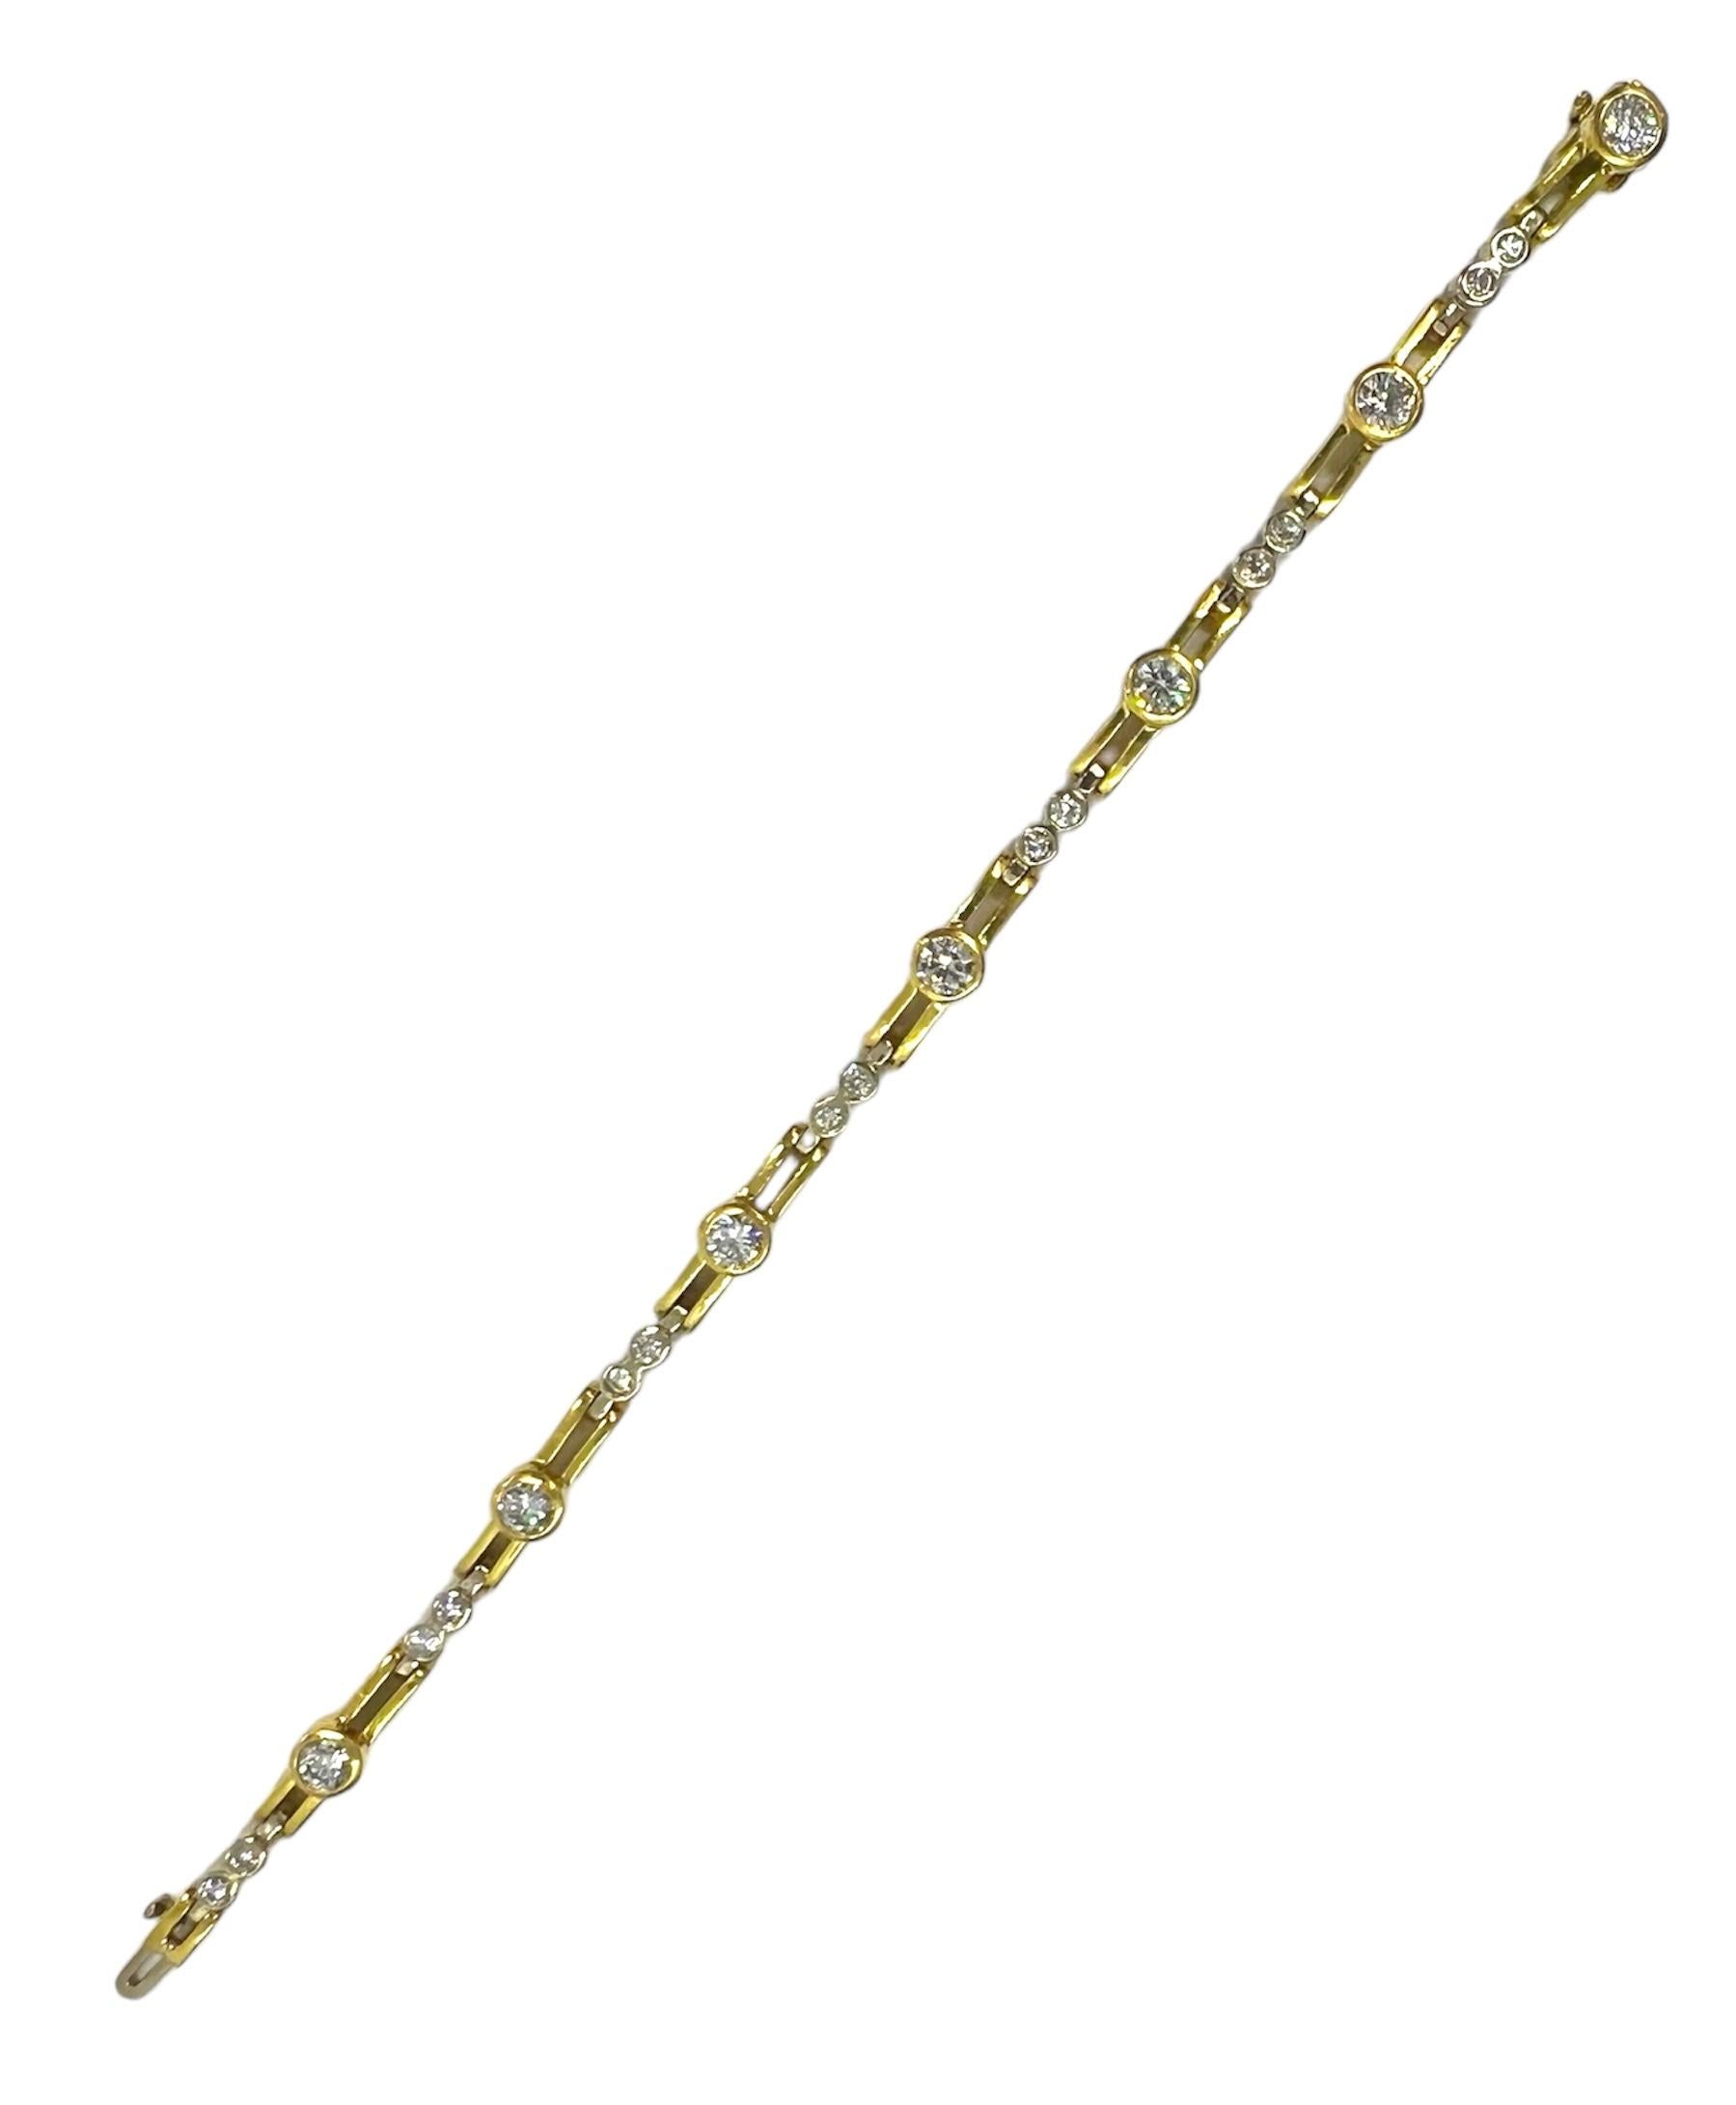 Armband aus 18 Karat Gelbgold mit runden Diamanten.

Sophia D von Joseph Dardashti LTD ist seit 35 Jahren weltweit bekannt und lässt sich vom klassischen Art-Déco-Design inspirieren, das mit modernen Fertigungstechniken verschmilzt.

